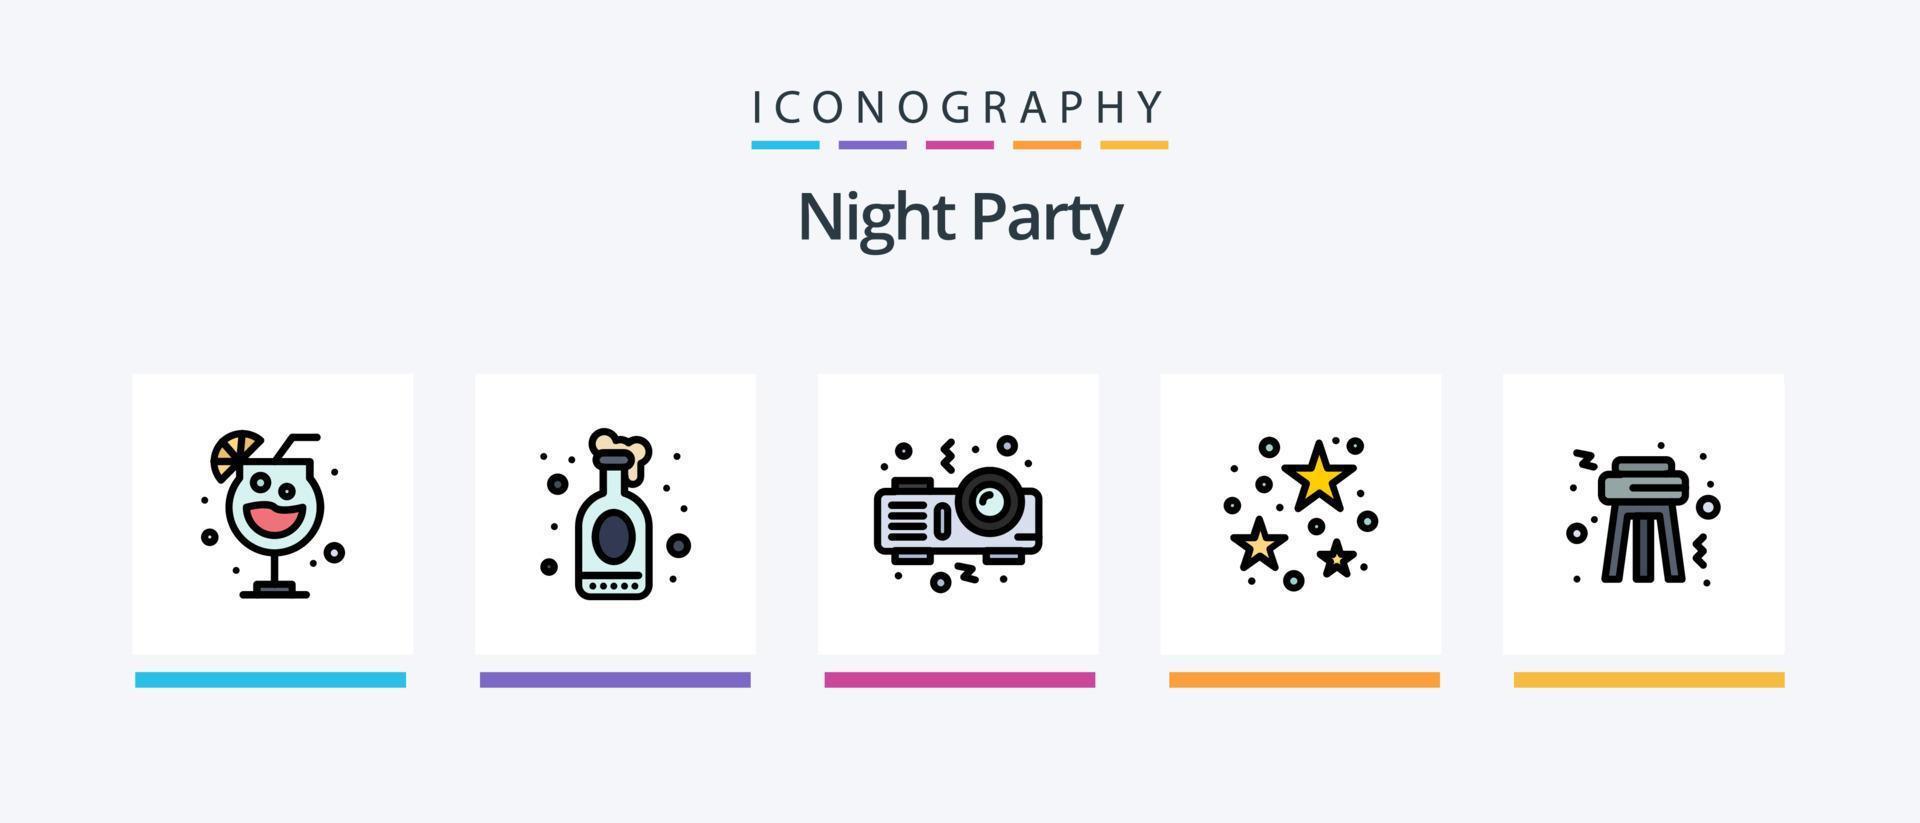 la línea de fiesta nocturna llenó un paquete de 5 íconos que incluye. fiesta. fiesta. noche. fiesta. diseño de iconos creativos vector